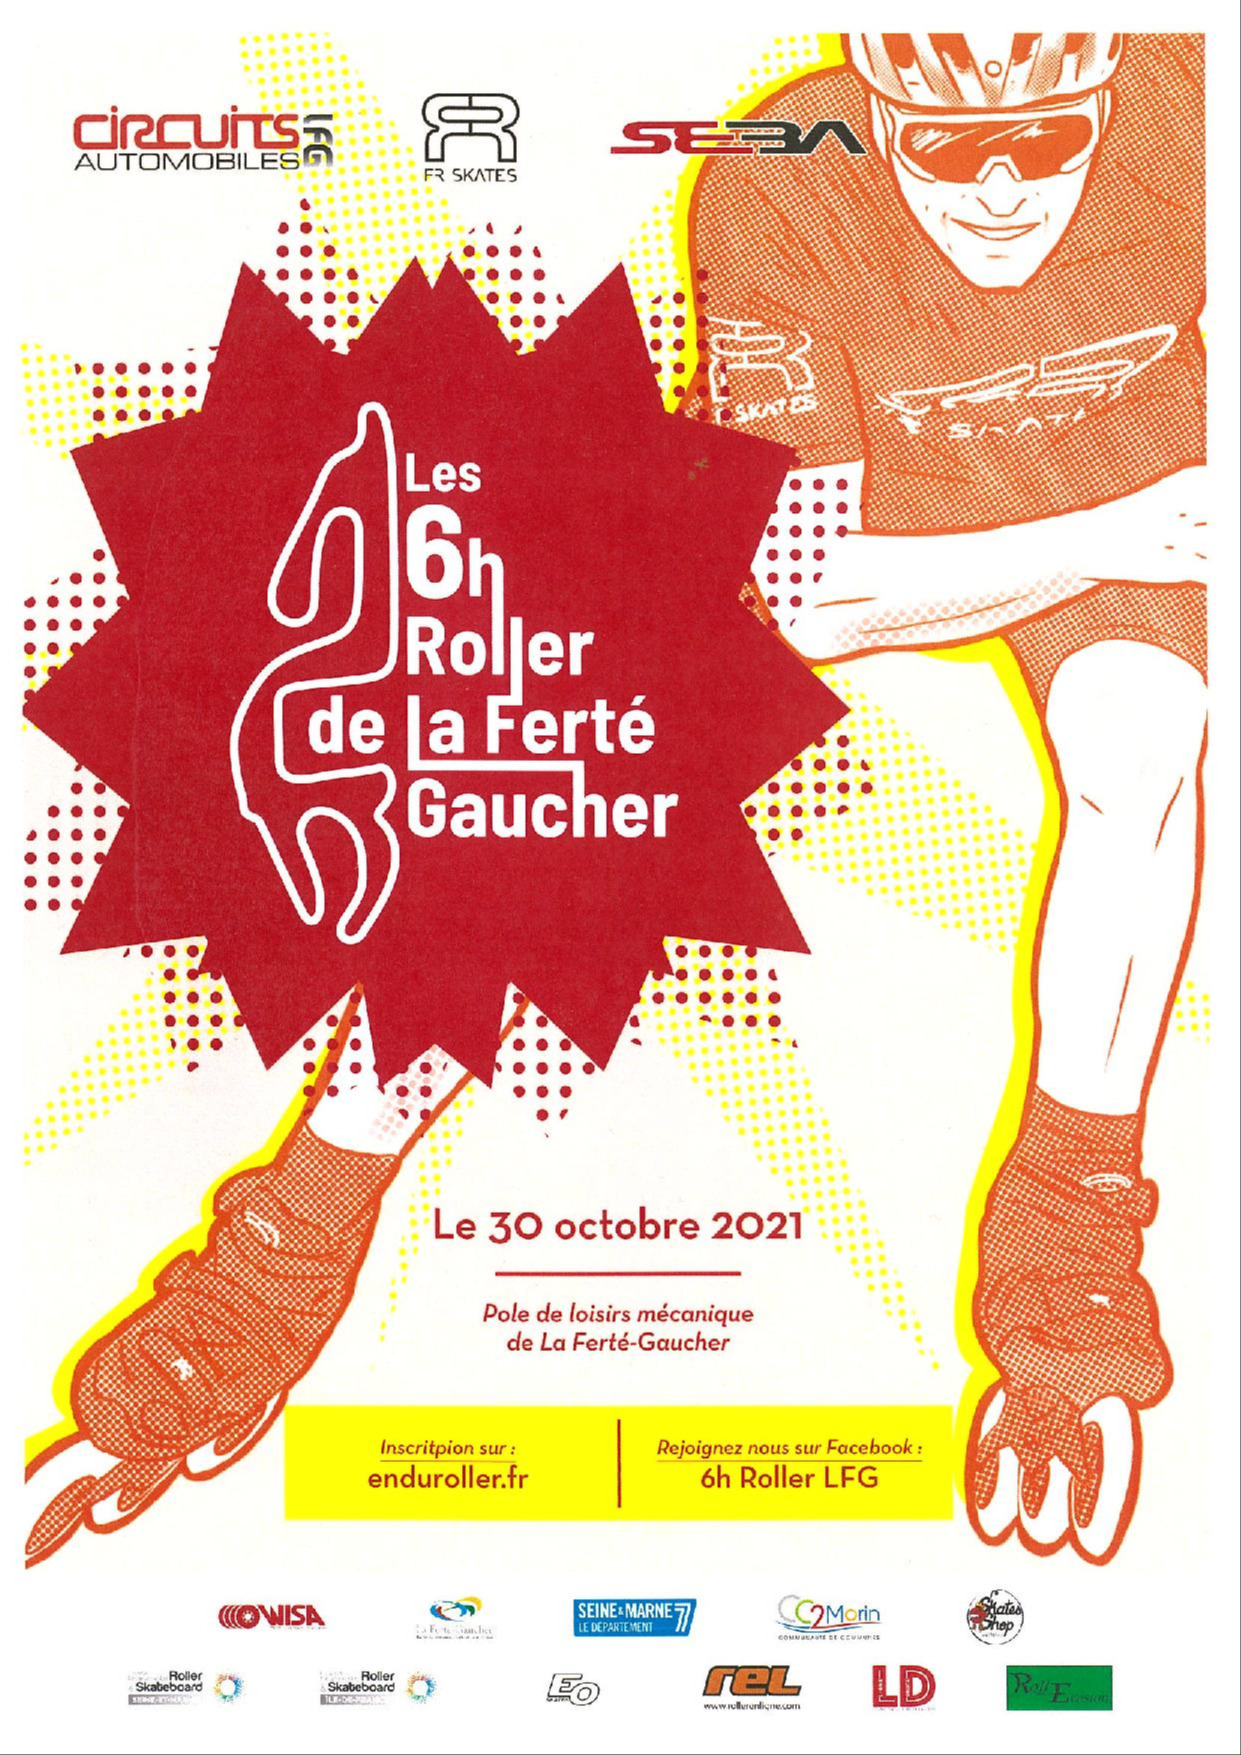 Les 6H Roller LFG – 30 octobre 2021